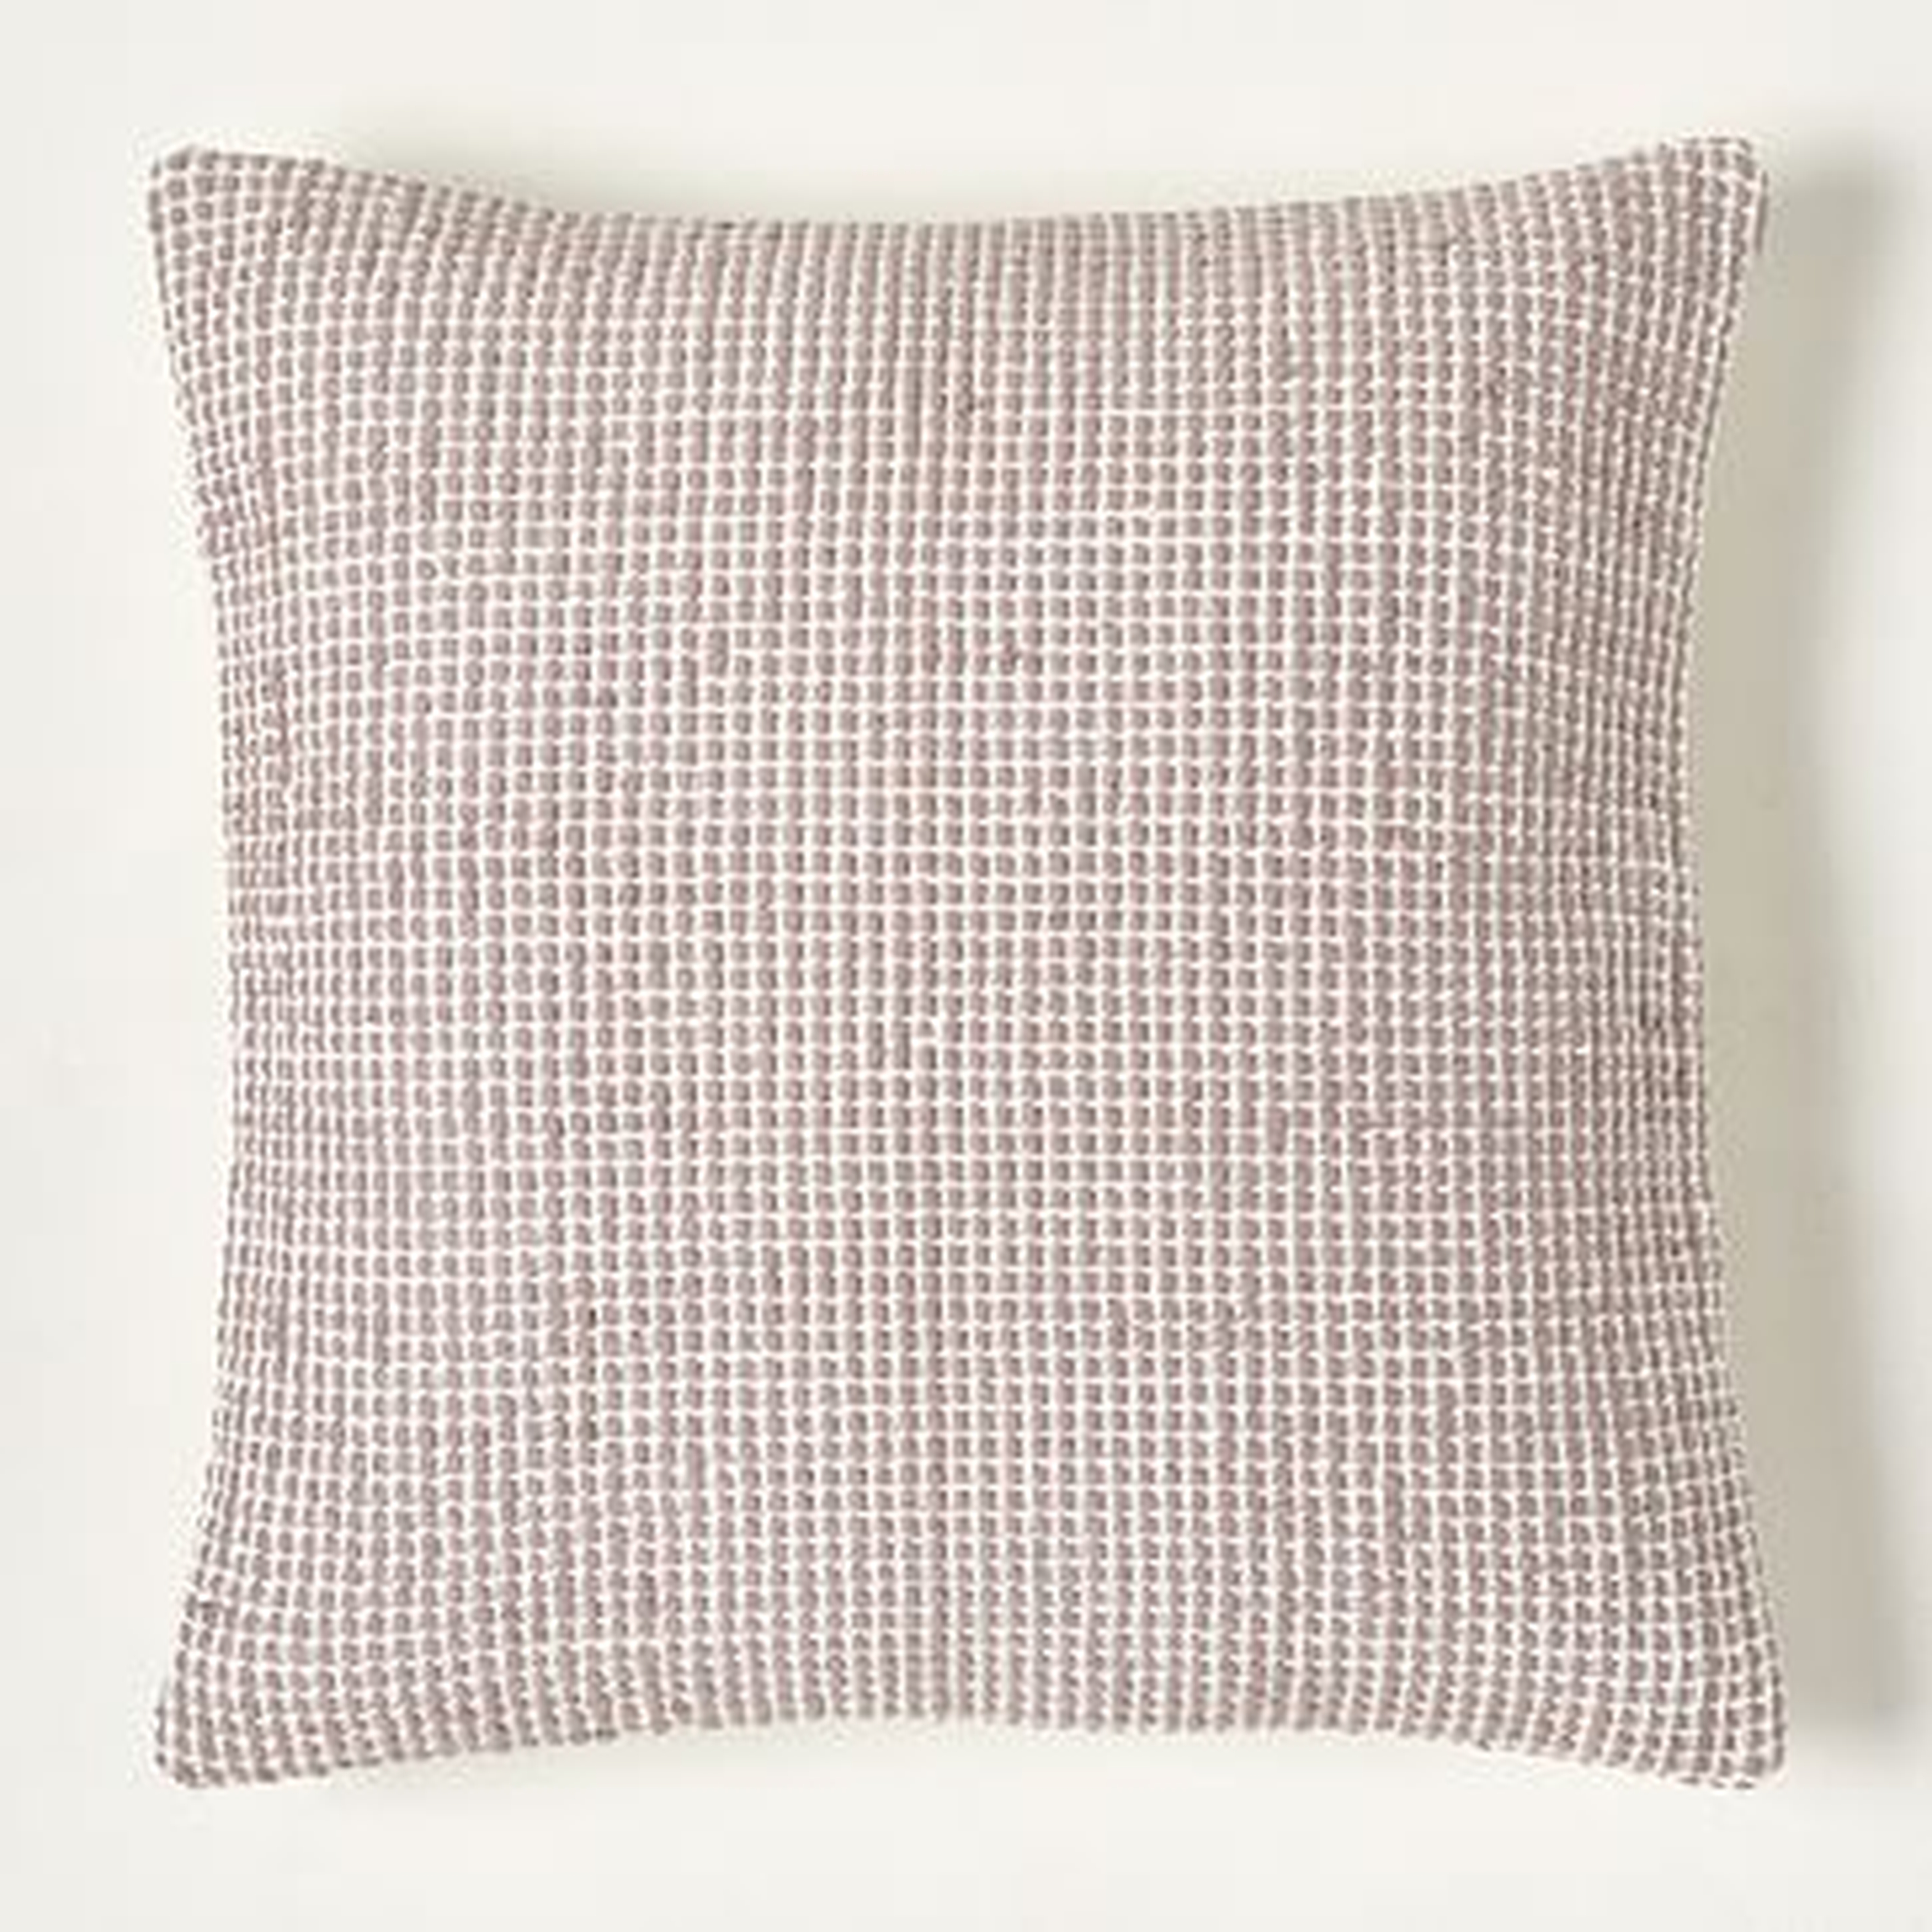 Textured Dimple Dot Pillow Cover, 20"x20", Light Mauve, Set of 2 - West Elm